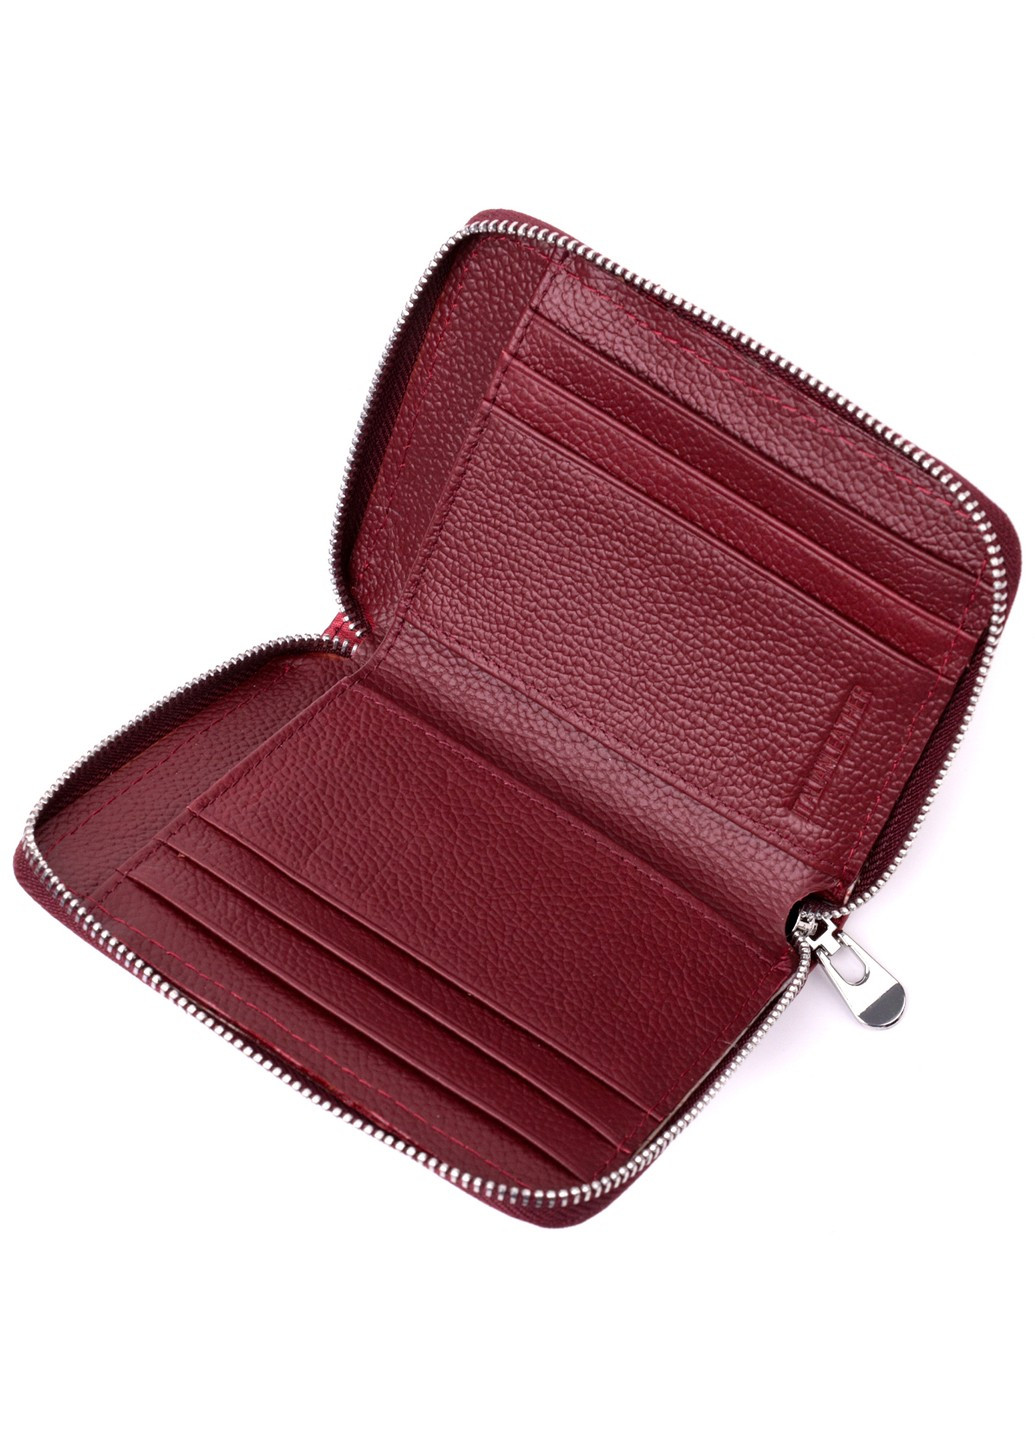 Симпатичный кожаный кошелек для женщин на молнии с тисненым логотипом производителя 19491 Бордовый st leather (277980395)